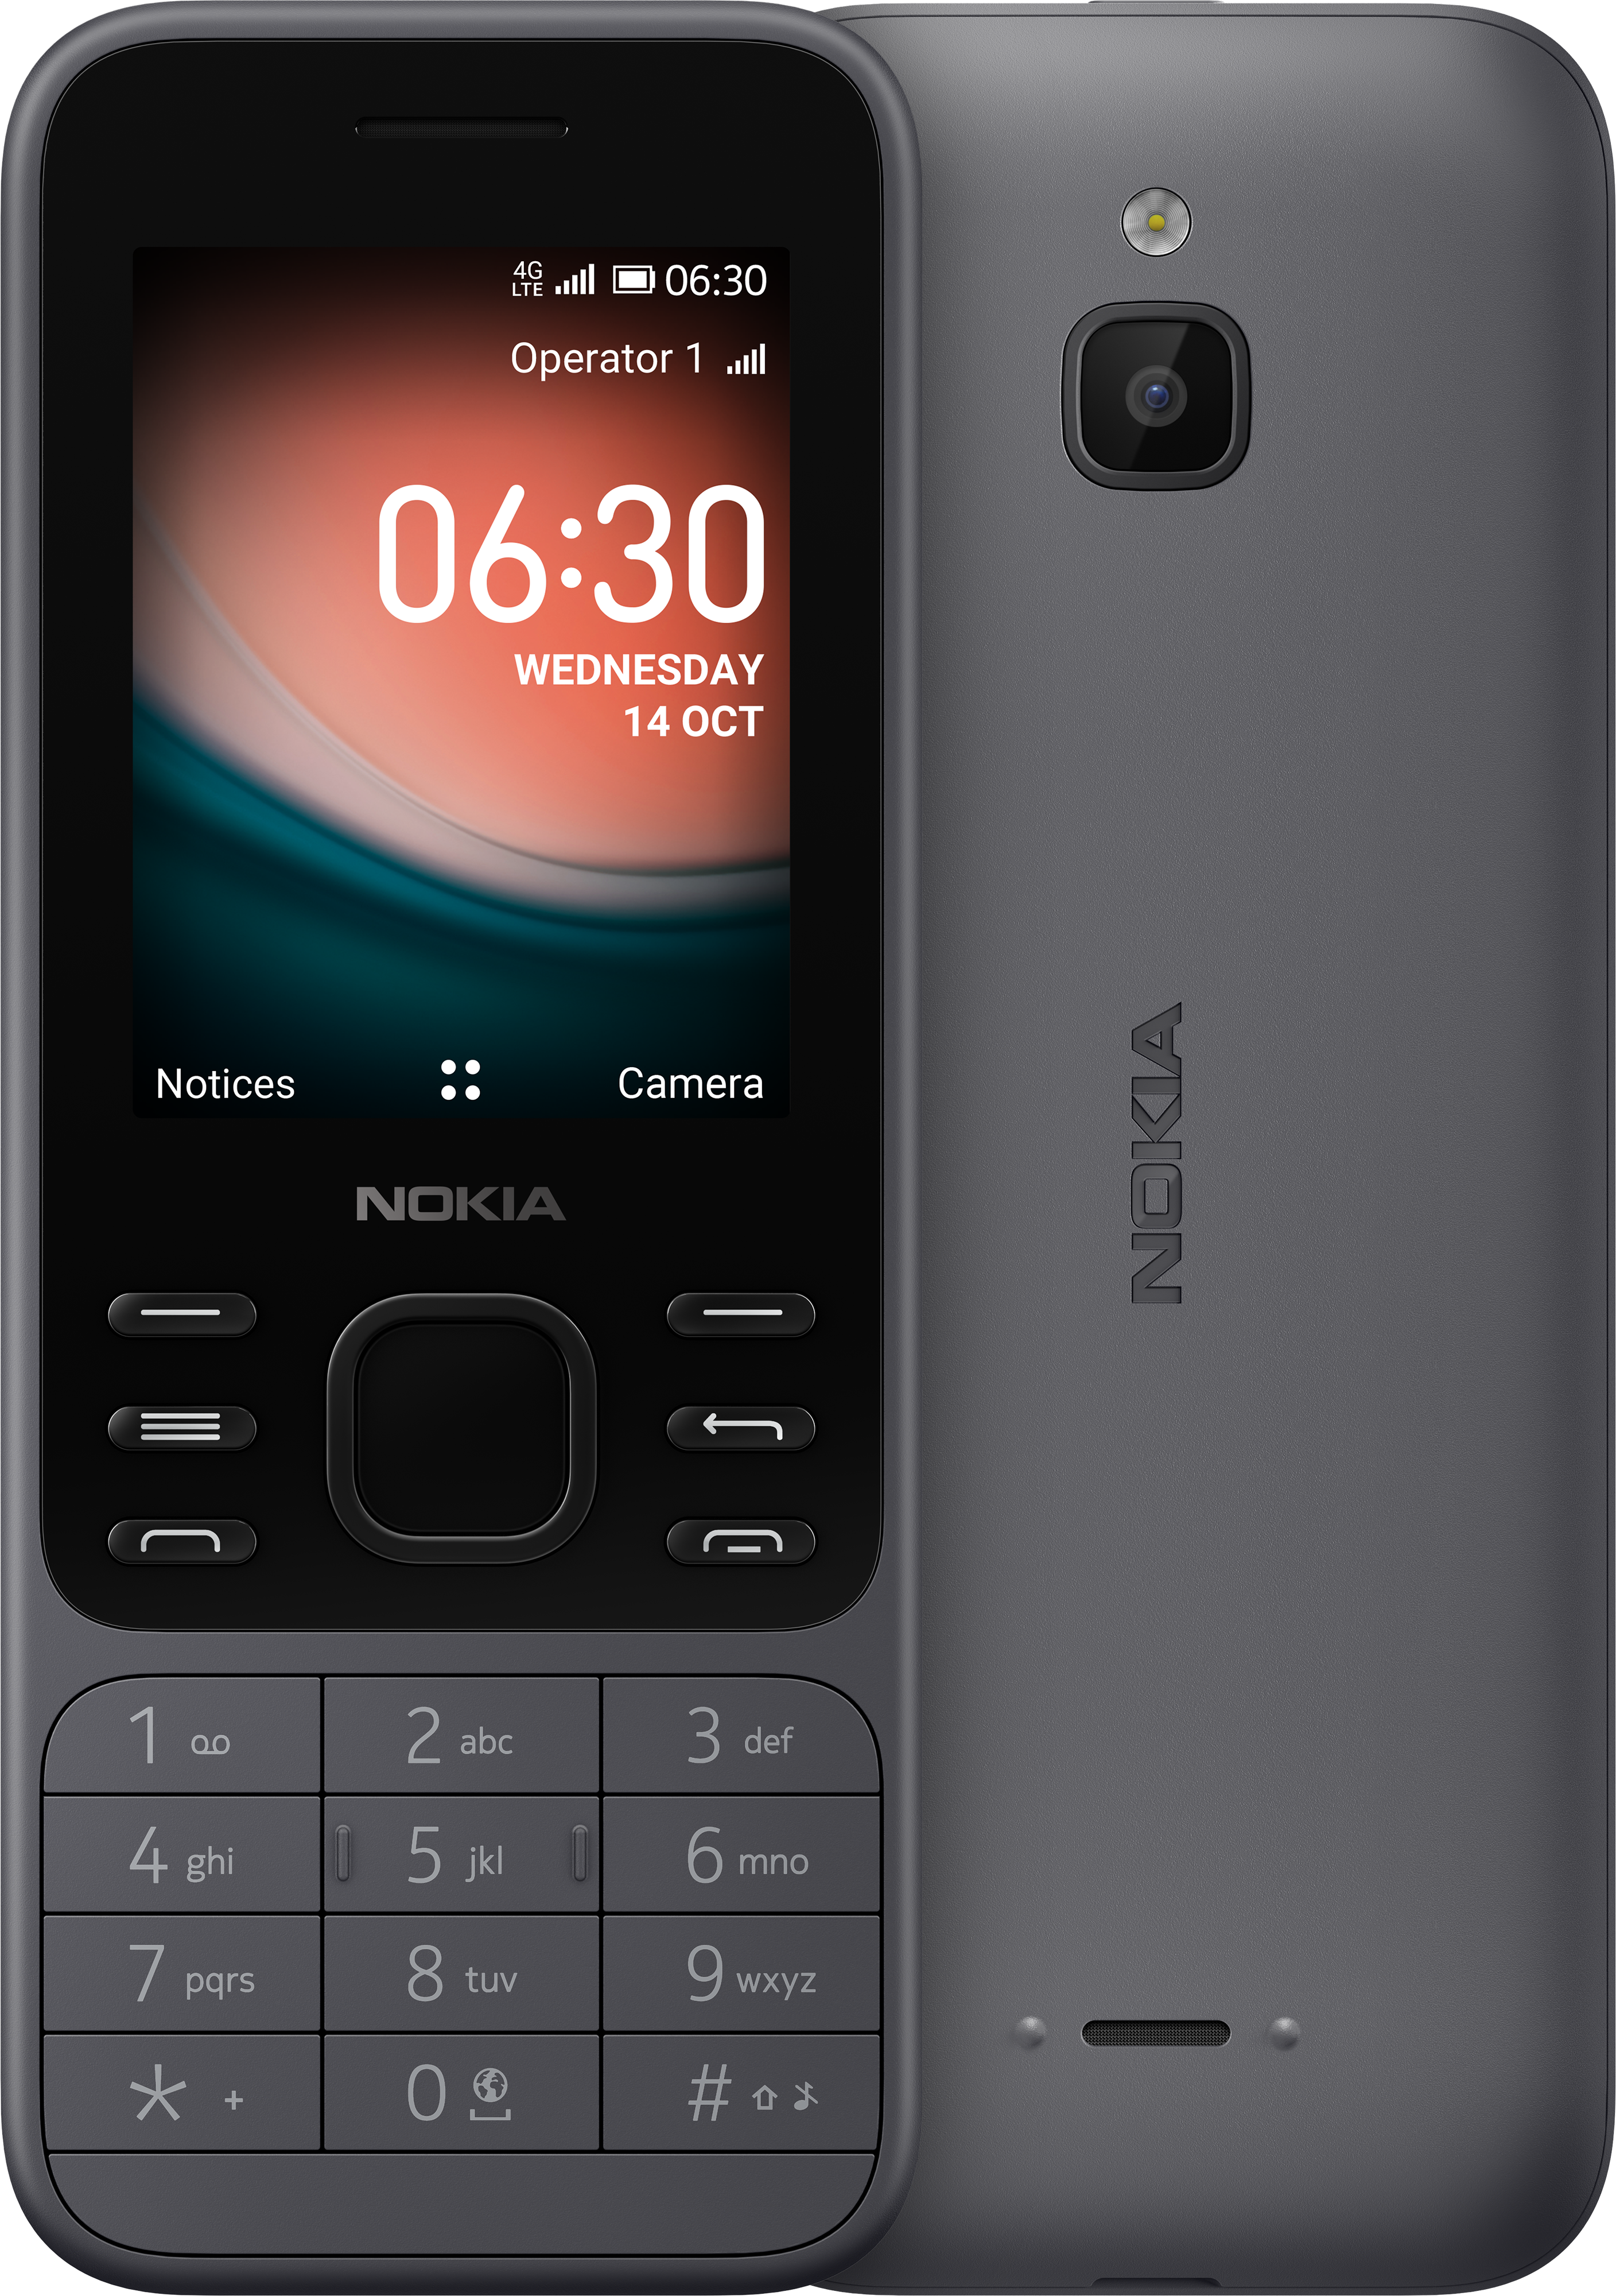 Điện thoại và phụ kiện Nokia mới nhất - một thế giới đa dạng với hàng trăm mẫu điện thoại và phụ kiện đến từ nhà sản xuất uy tín hàng đầu. Hãy cập nhật những xu hướng thời trang mới nhất và đảm bảo chất lượng sản phẩm.